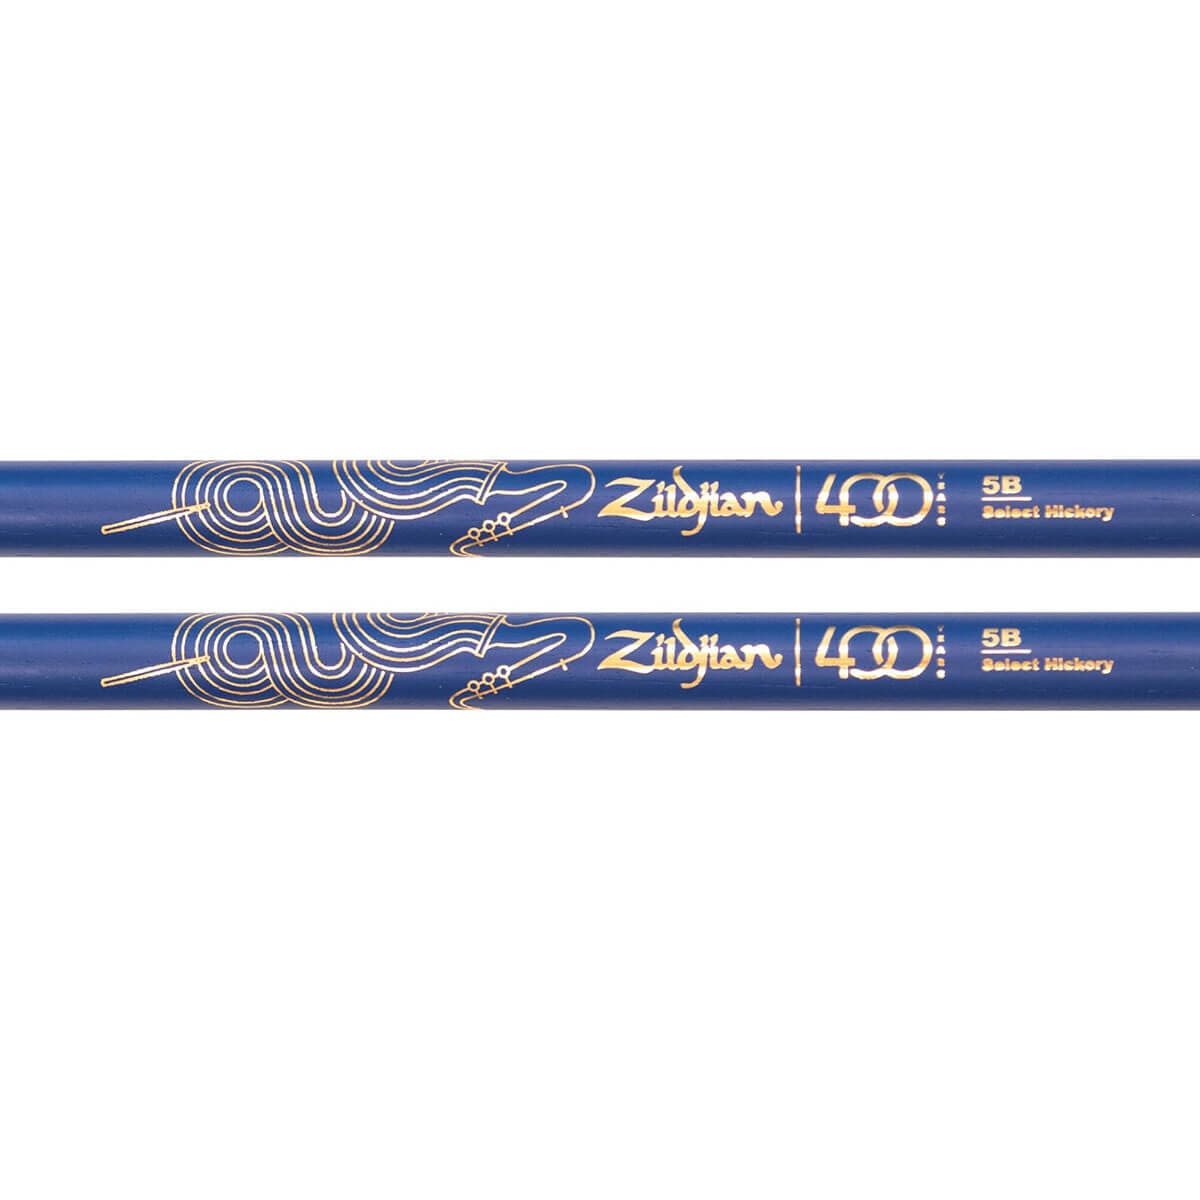 Zildjian Limited Edition 400th Anniversary Drum Sticks 5B Acorn Blue